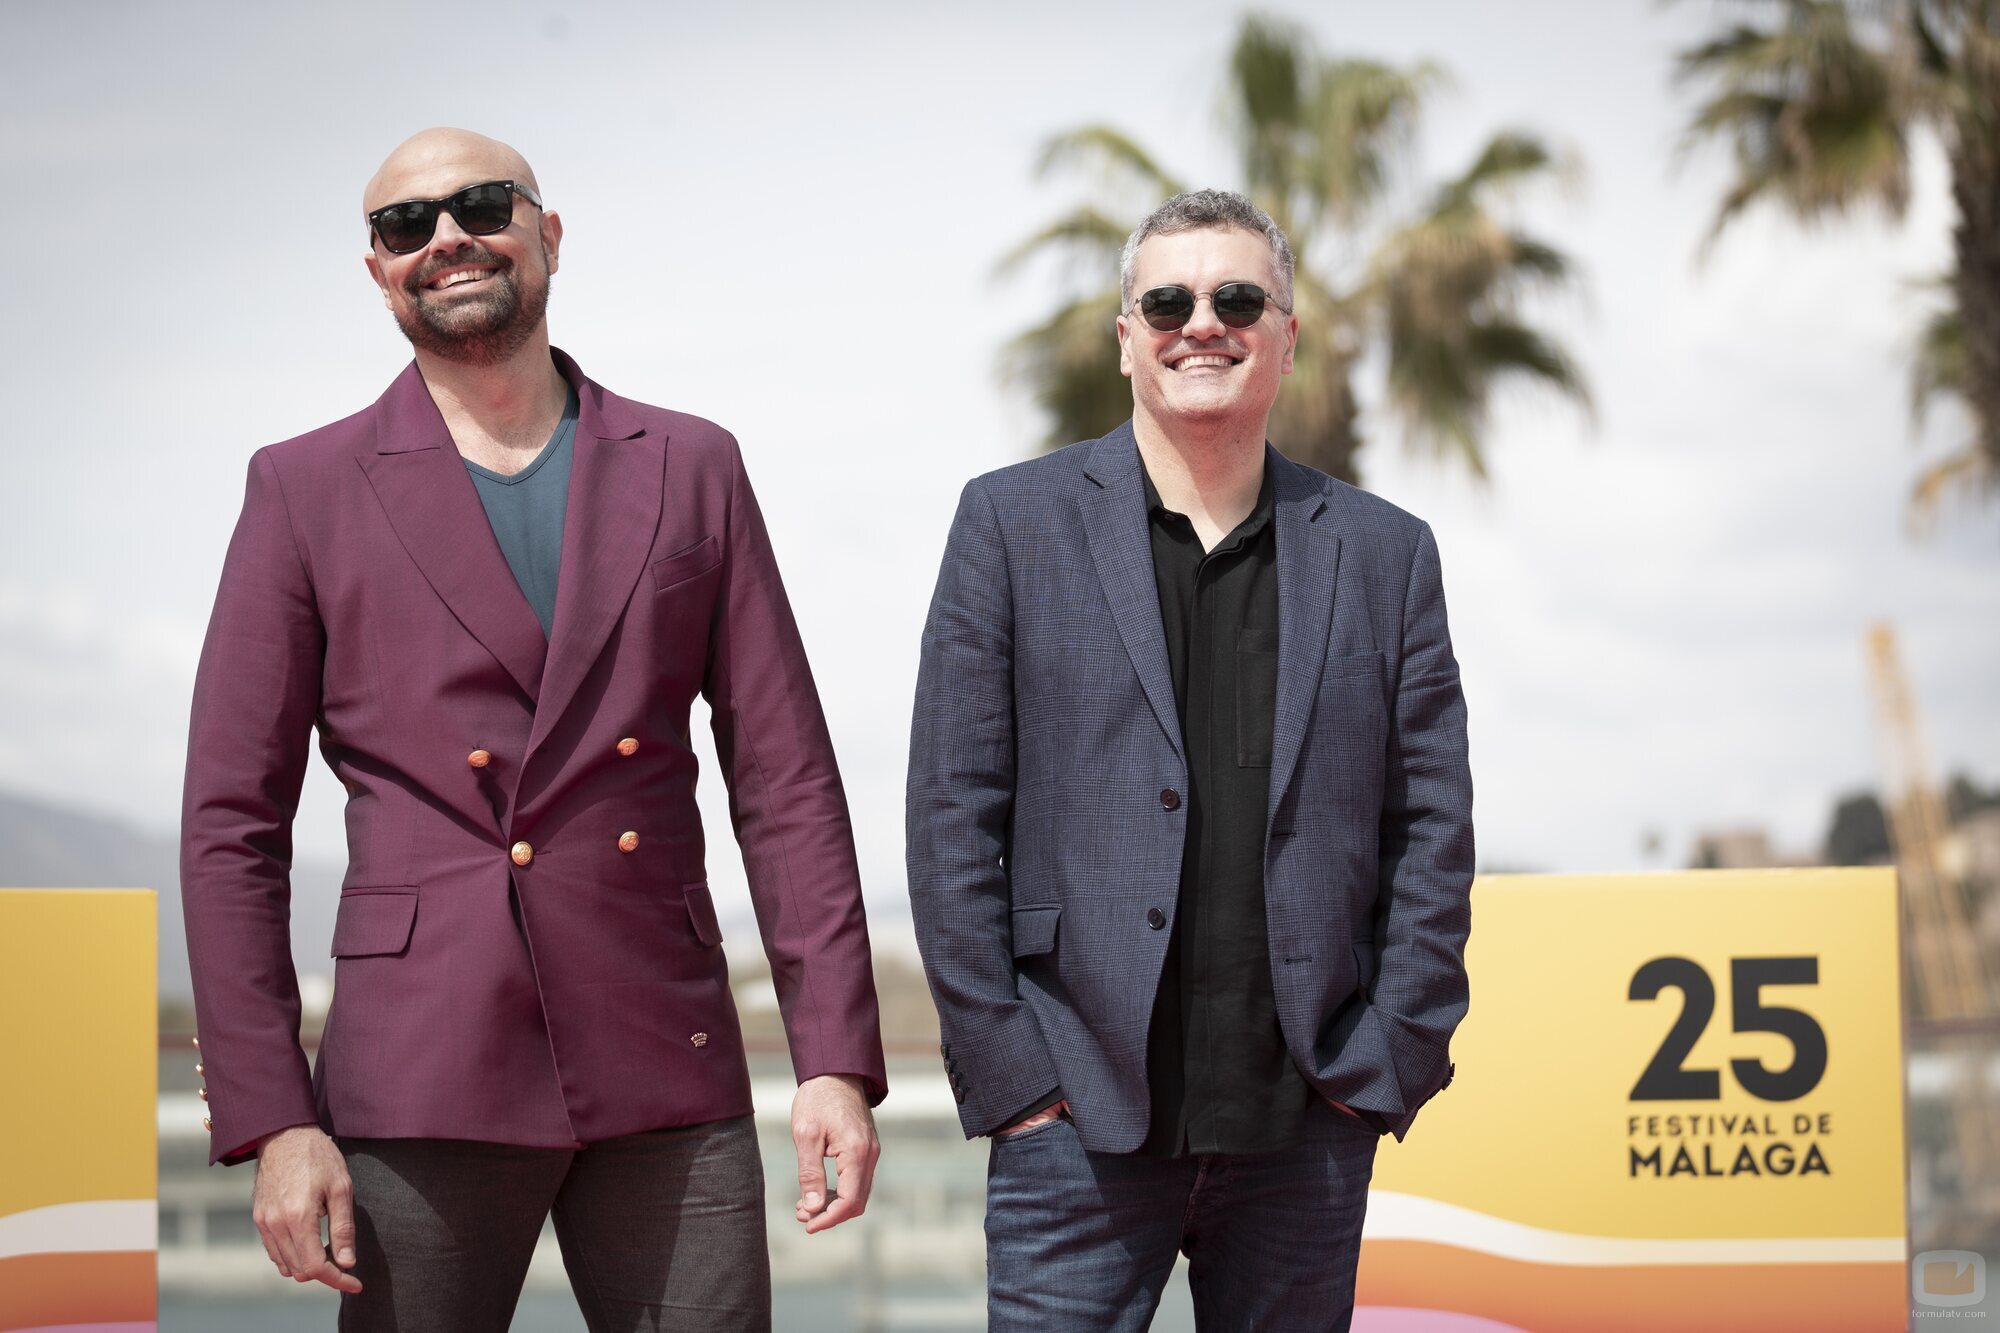 Jaime Vaca y Carlos Montero presentan 'Élite' en el 25 Festival de Málaga